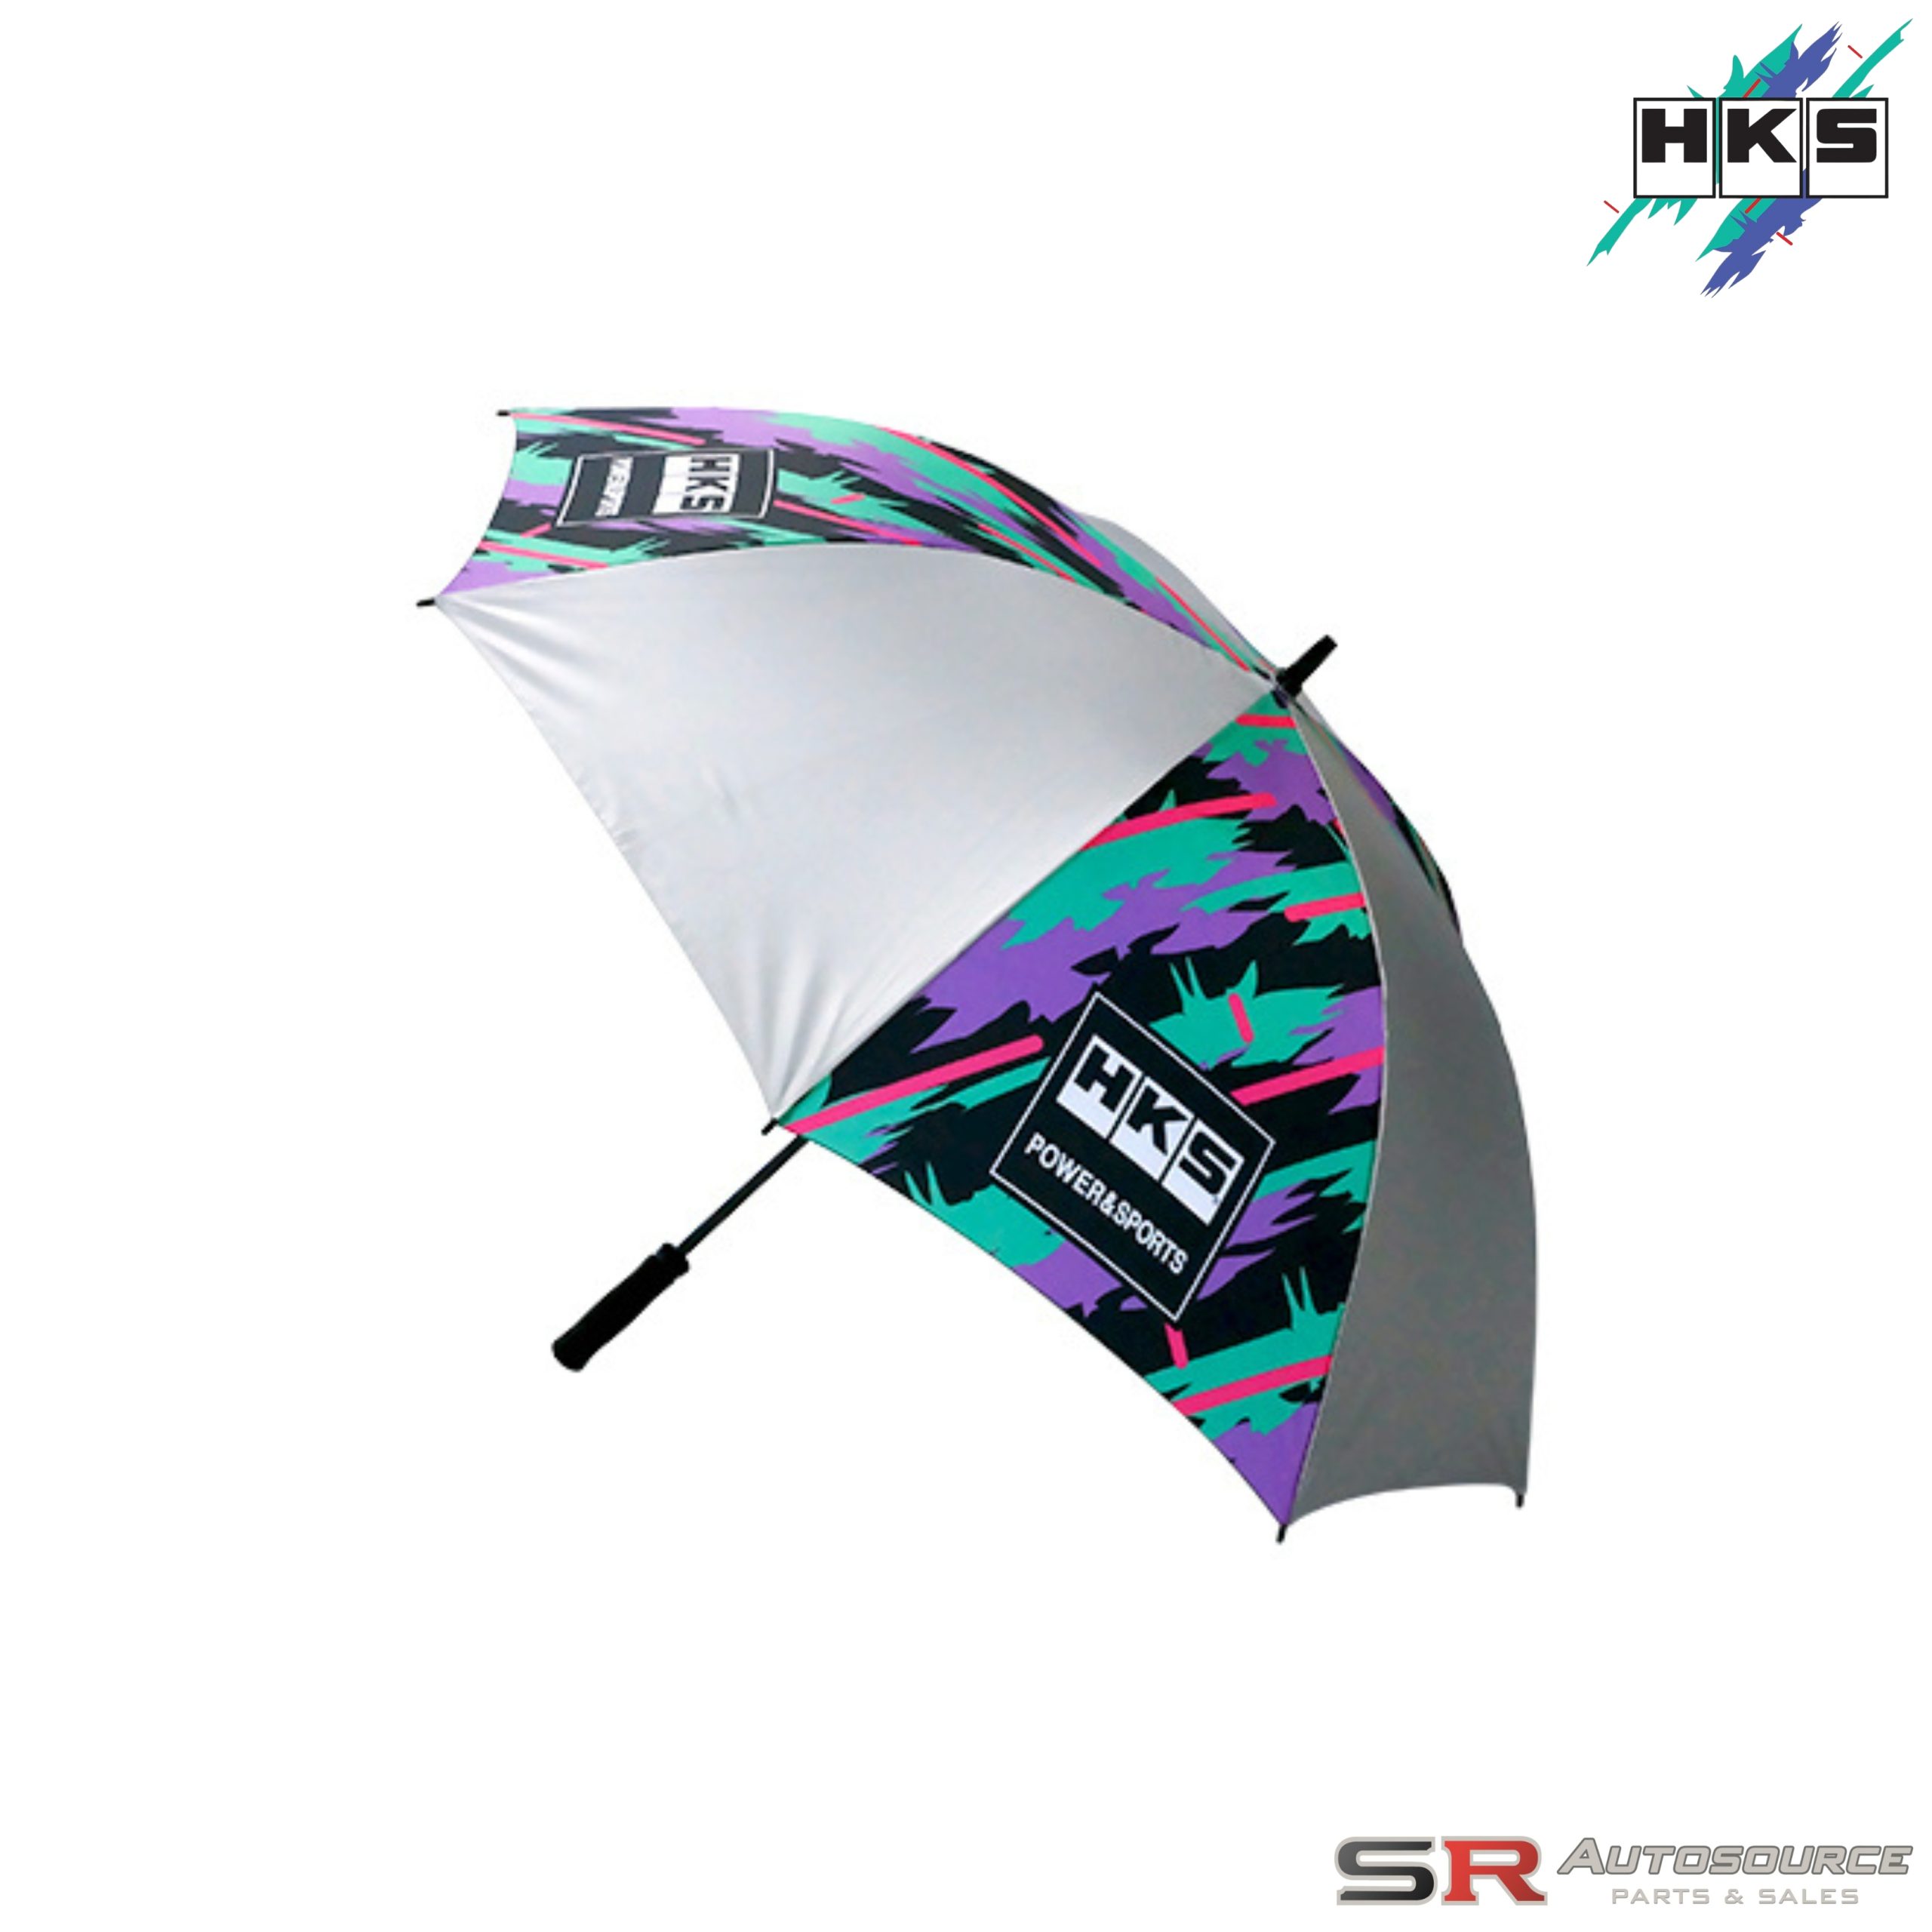 HKS Circuit Umbrella – Oil Splash